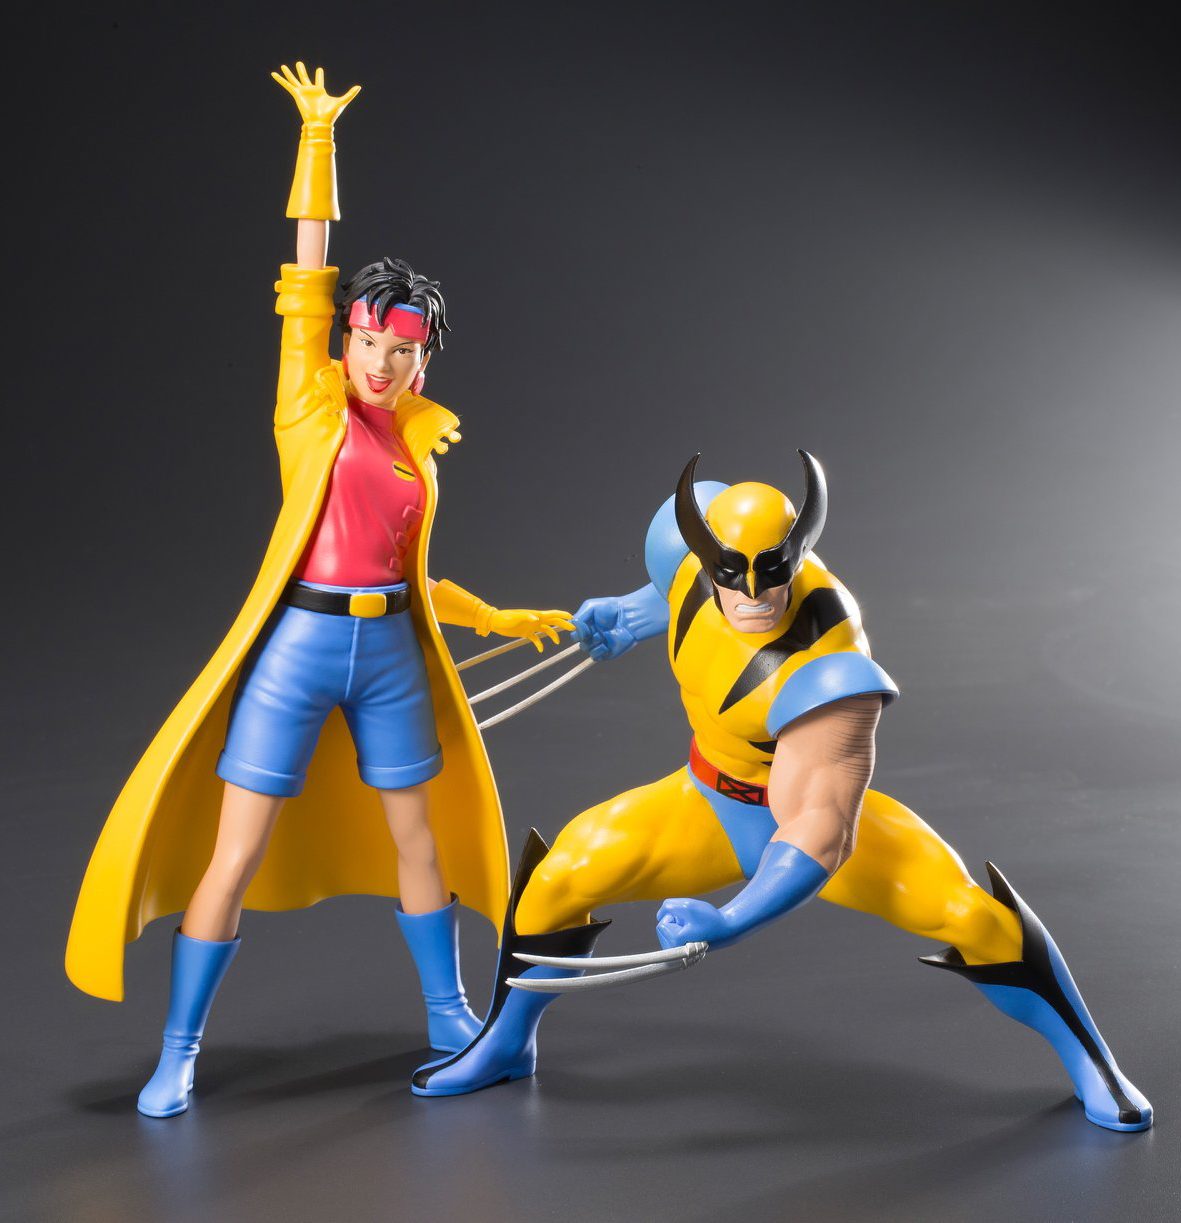 Kotobukiya X-Men '92 Jubilee & Wolverine ARTFX+ Statues! - Marvel Toy News